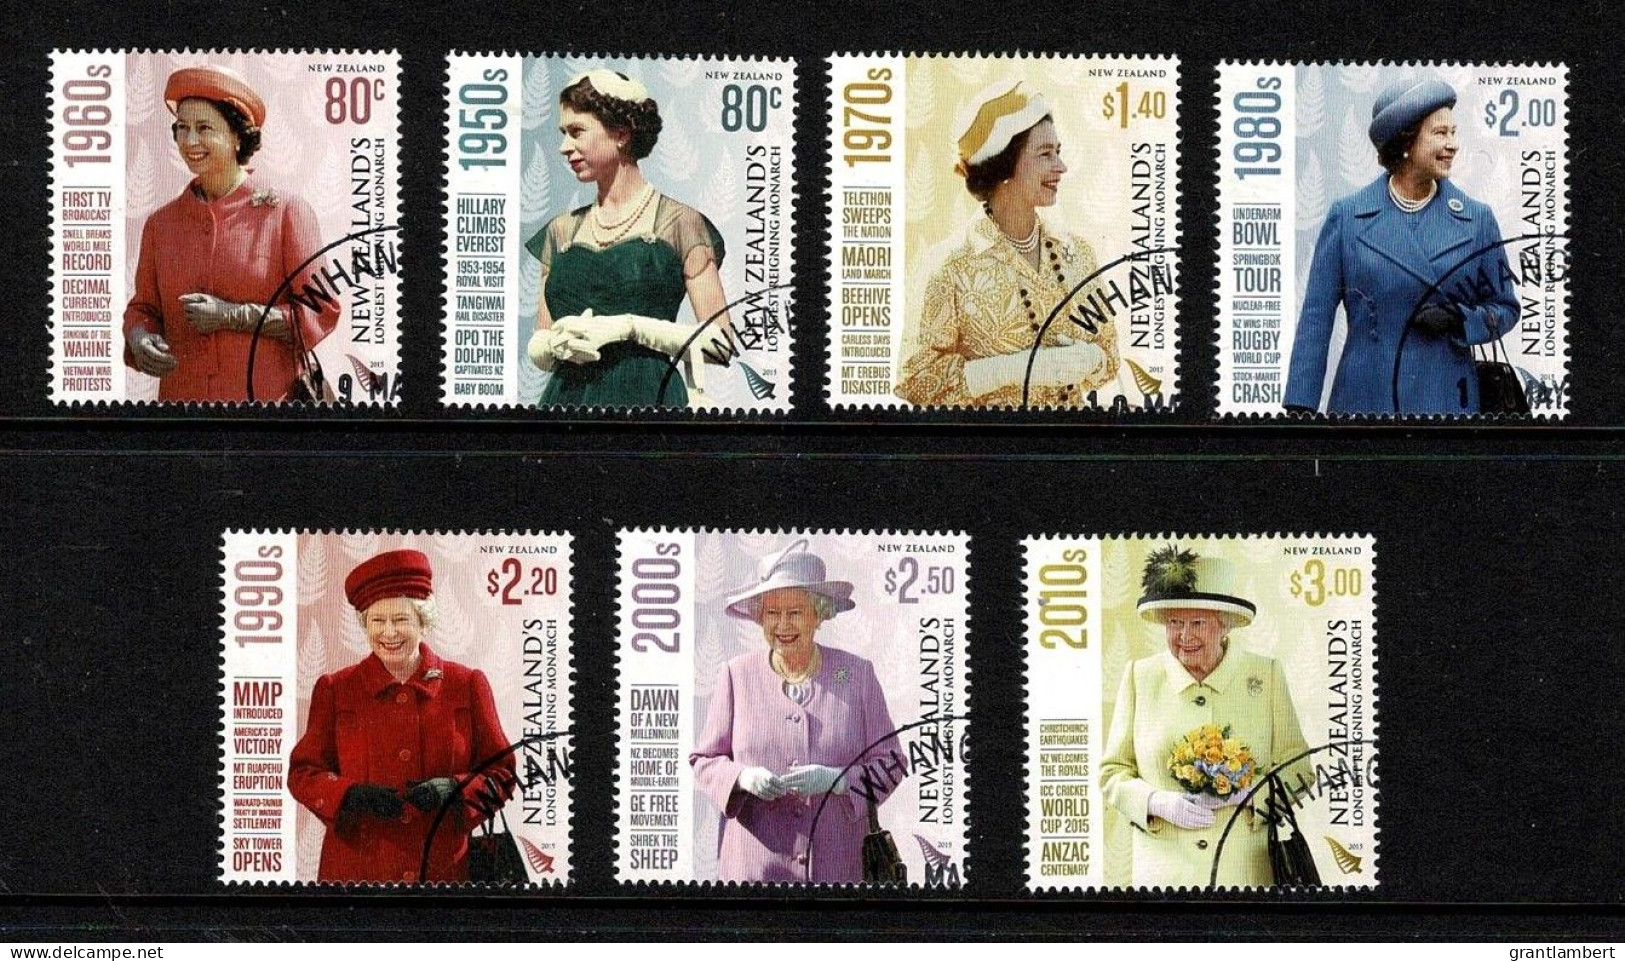 New Zealand 2015 Queen Elizabeth - Longest Reigning Monarch  Set Of 7 Used - Gebruikt